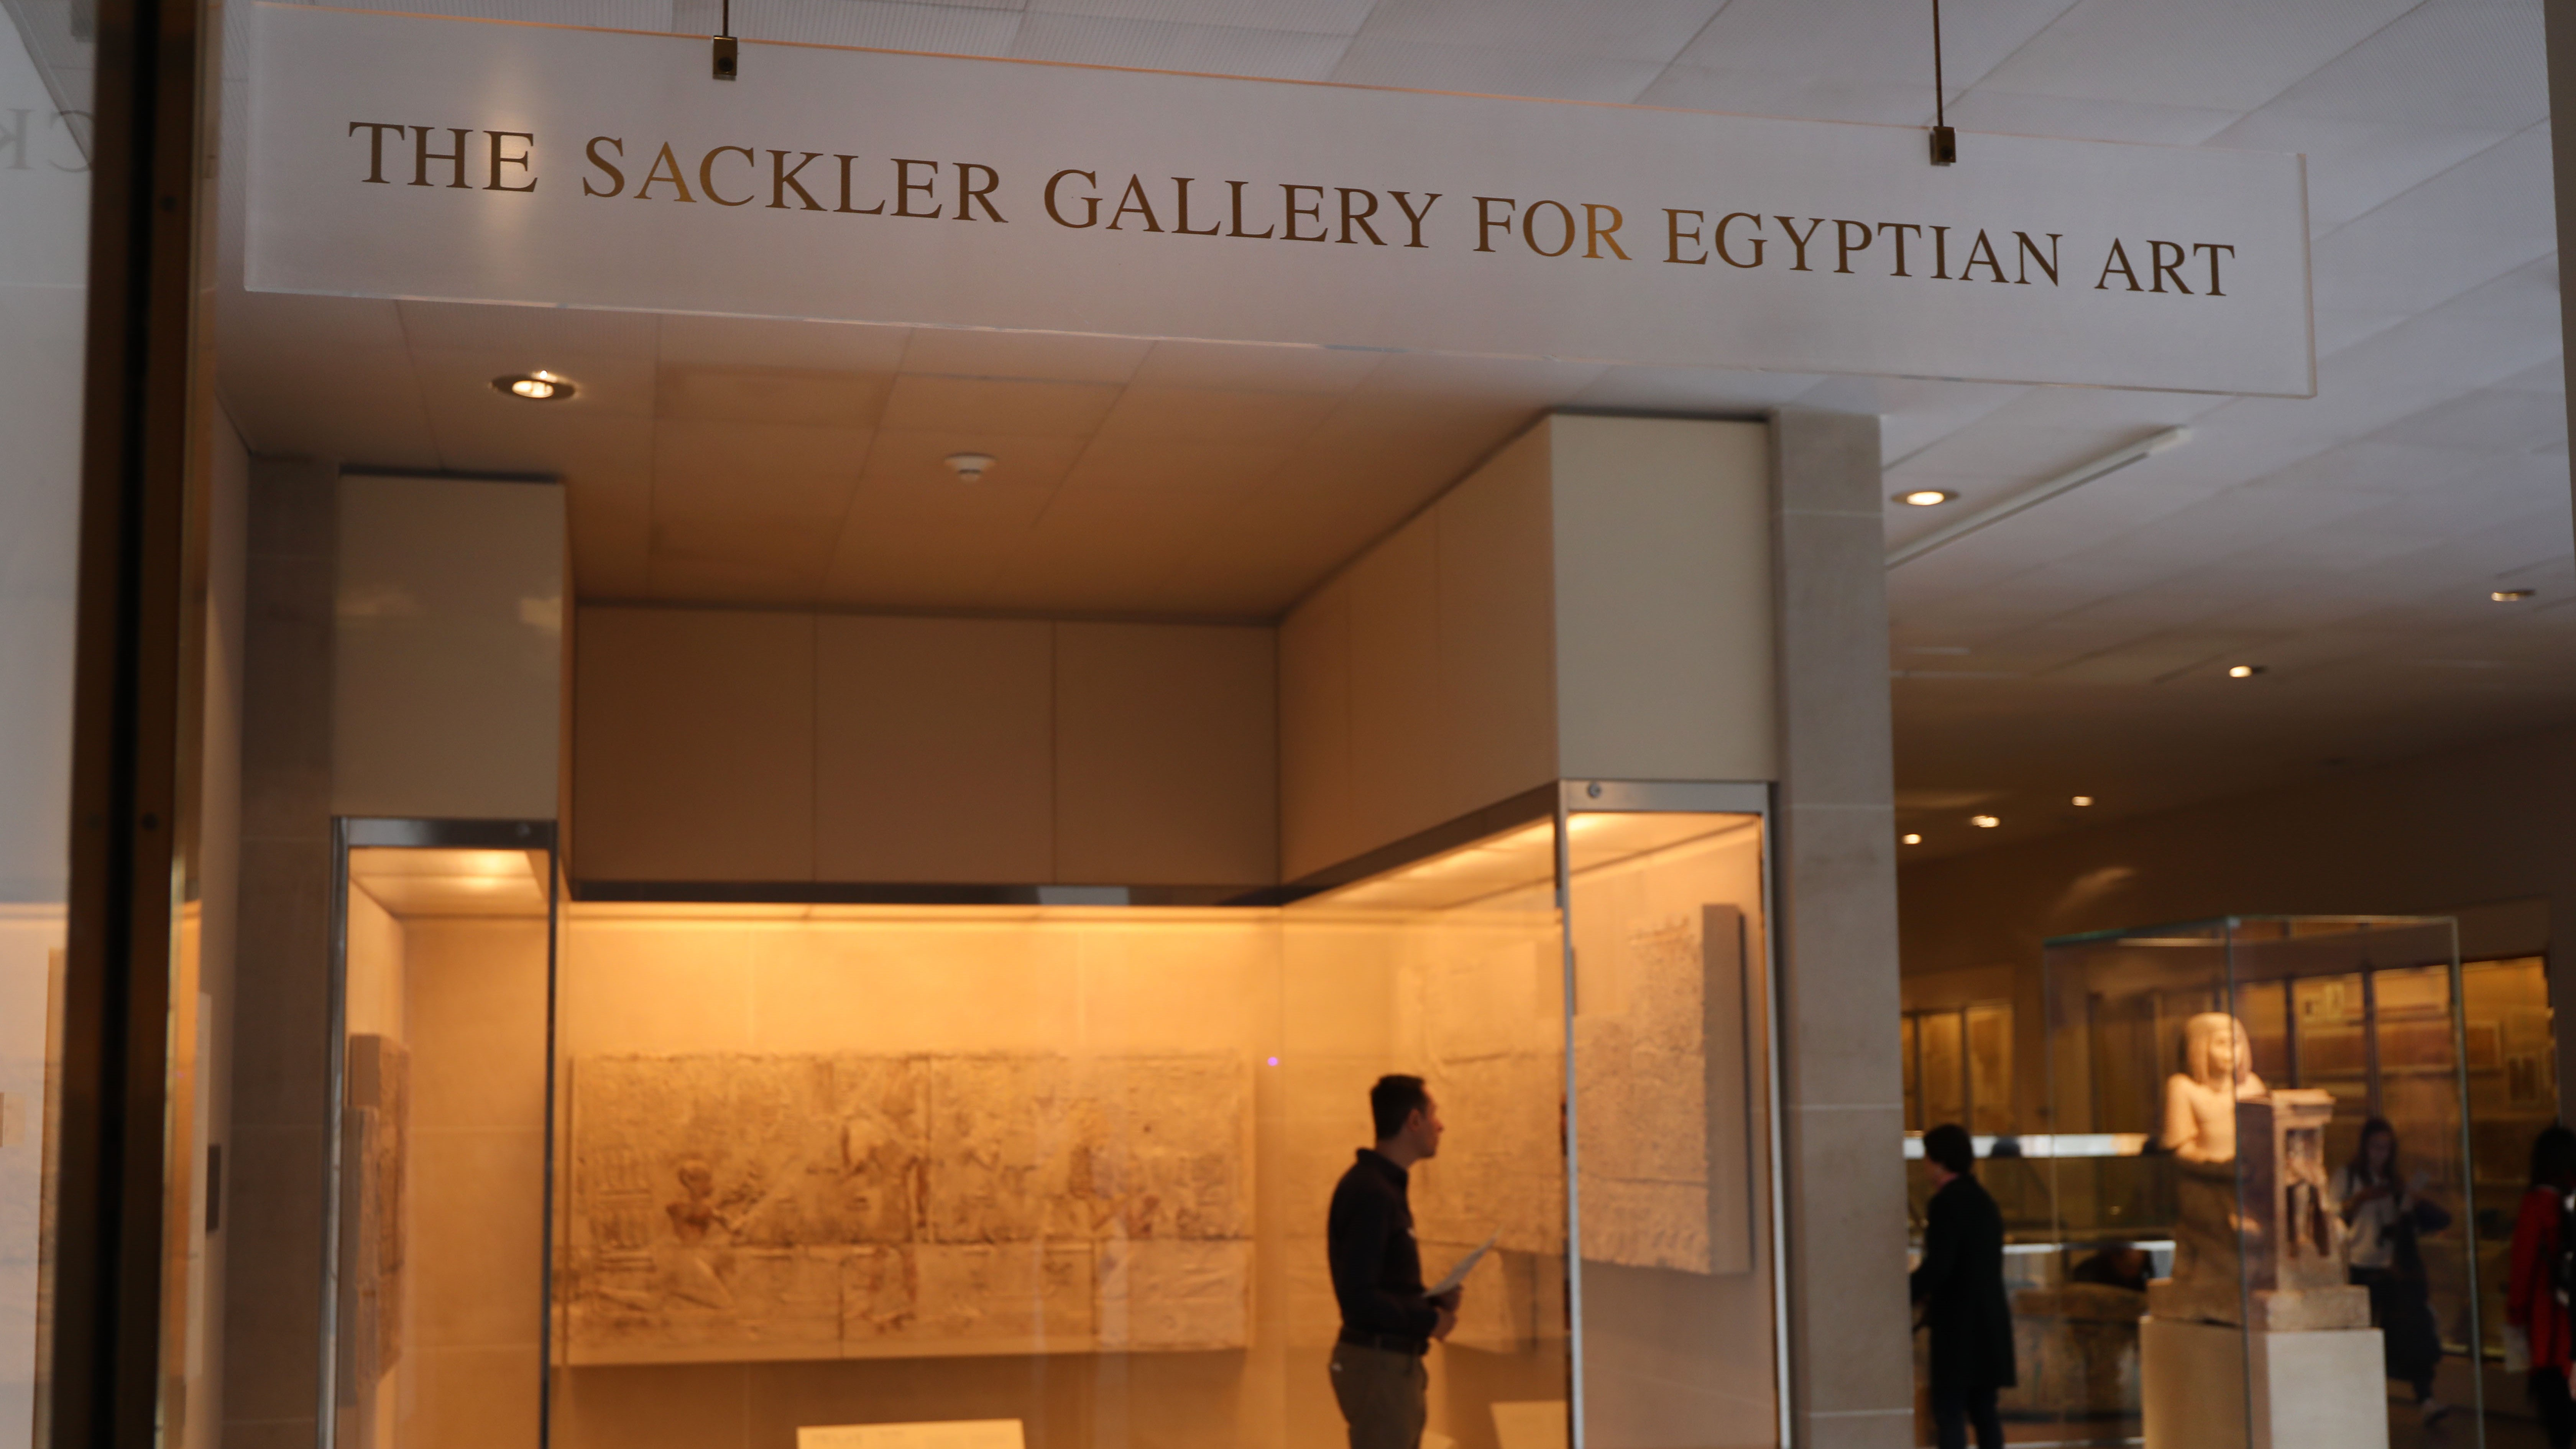 Függőséget okozó gyógyszert gyártottak, ezért eltüntették a Sackler család nevét a Metropolitan Museum tereiből